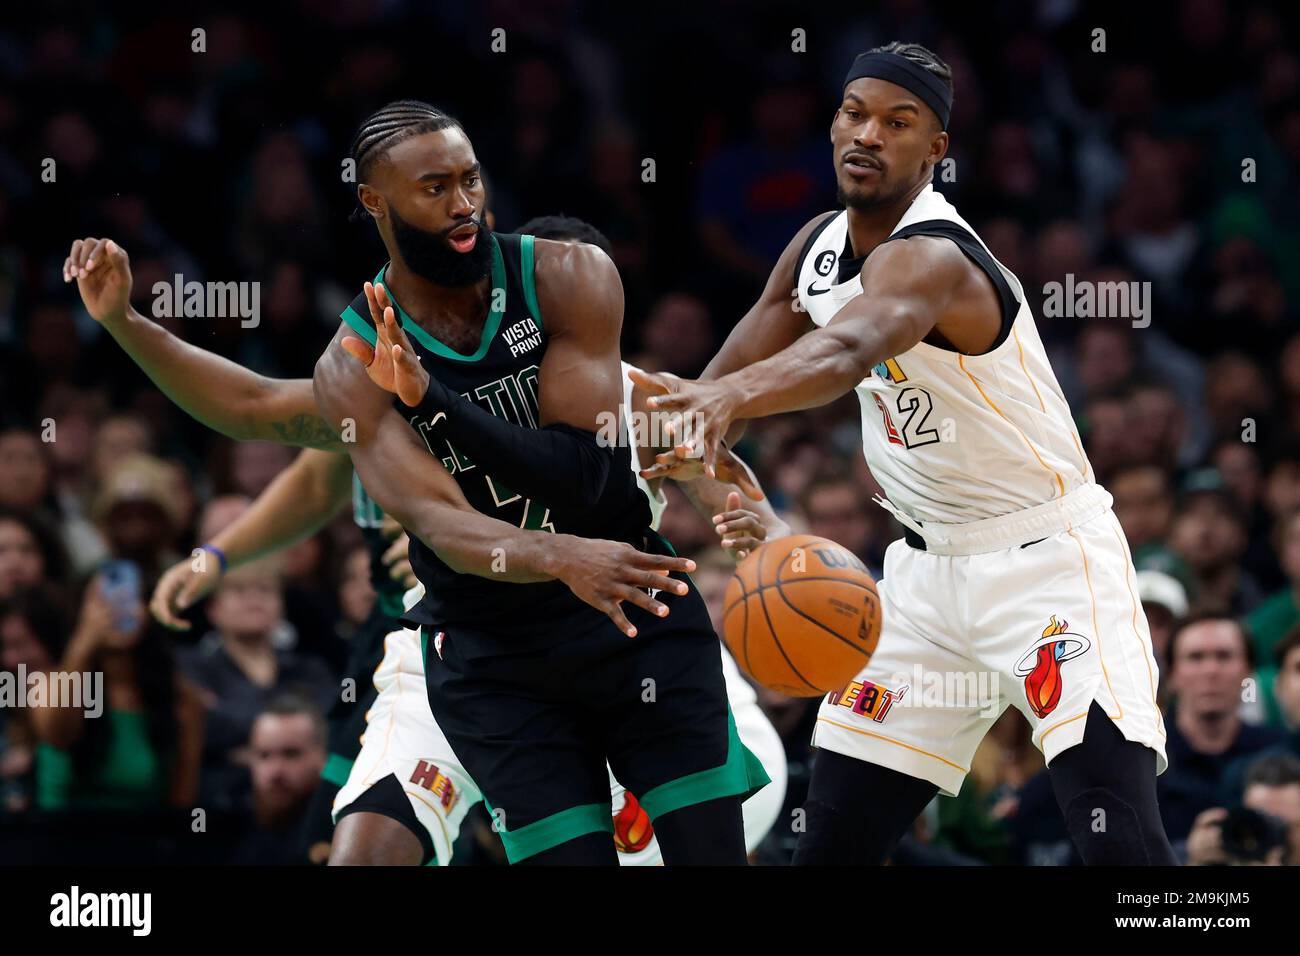 Photo gallery: Celtics at Heat, Friday, October 21, 2022